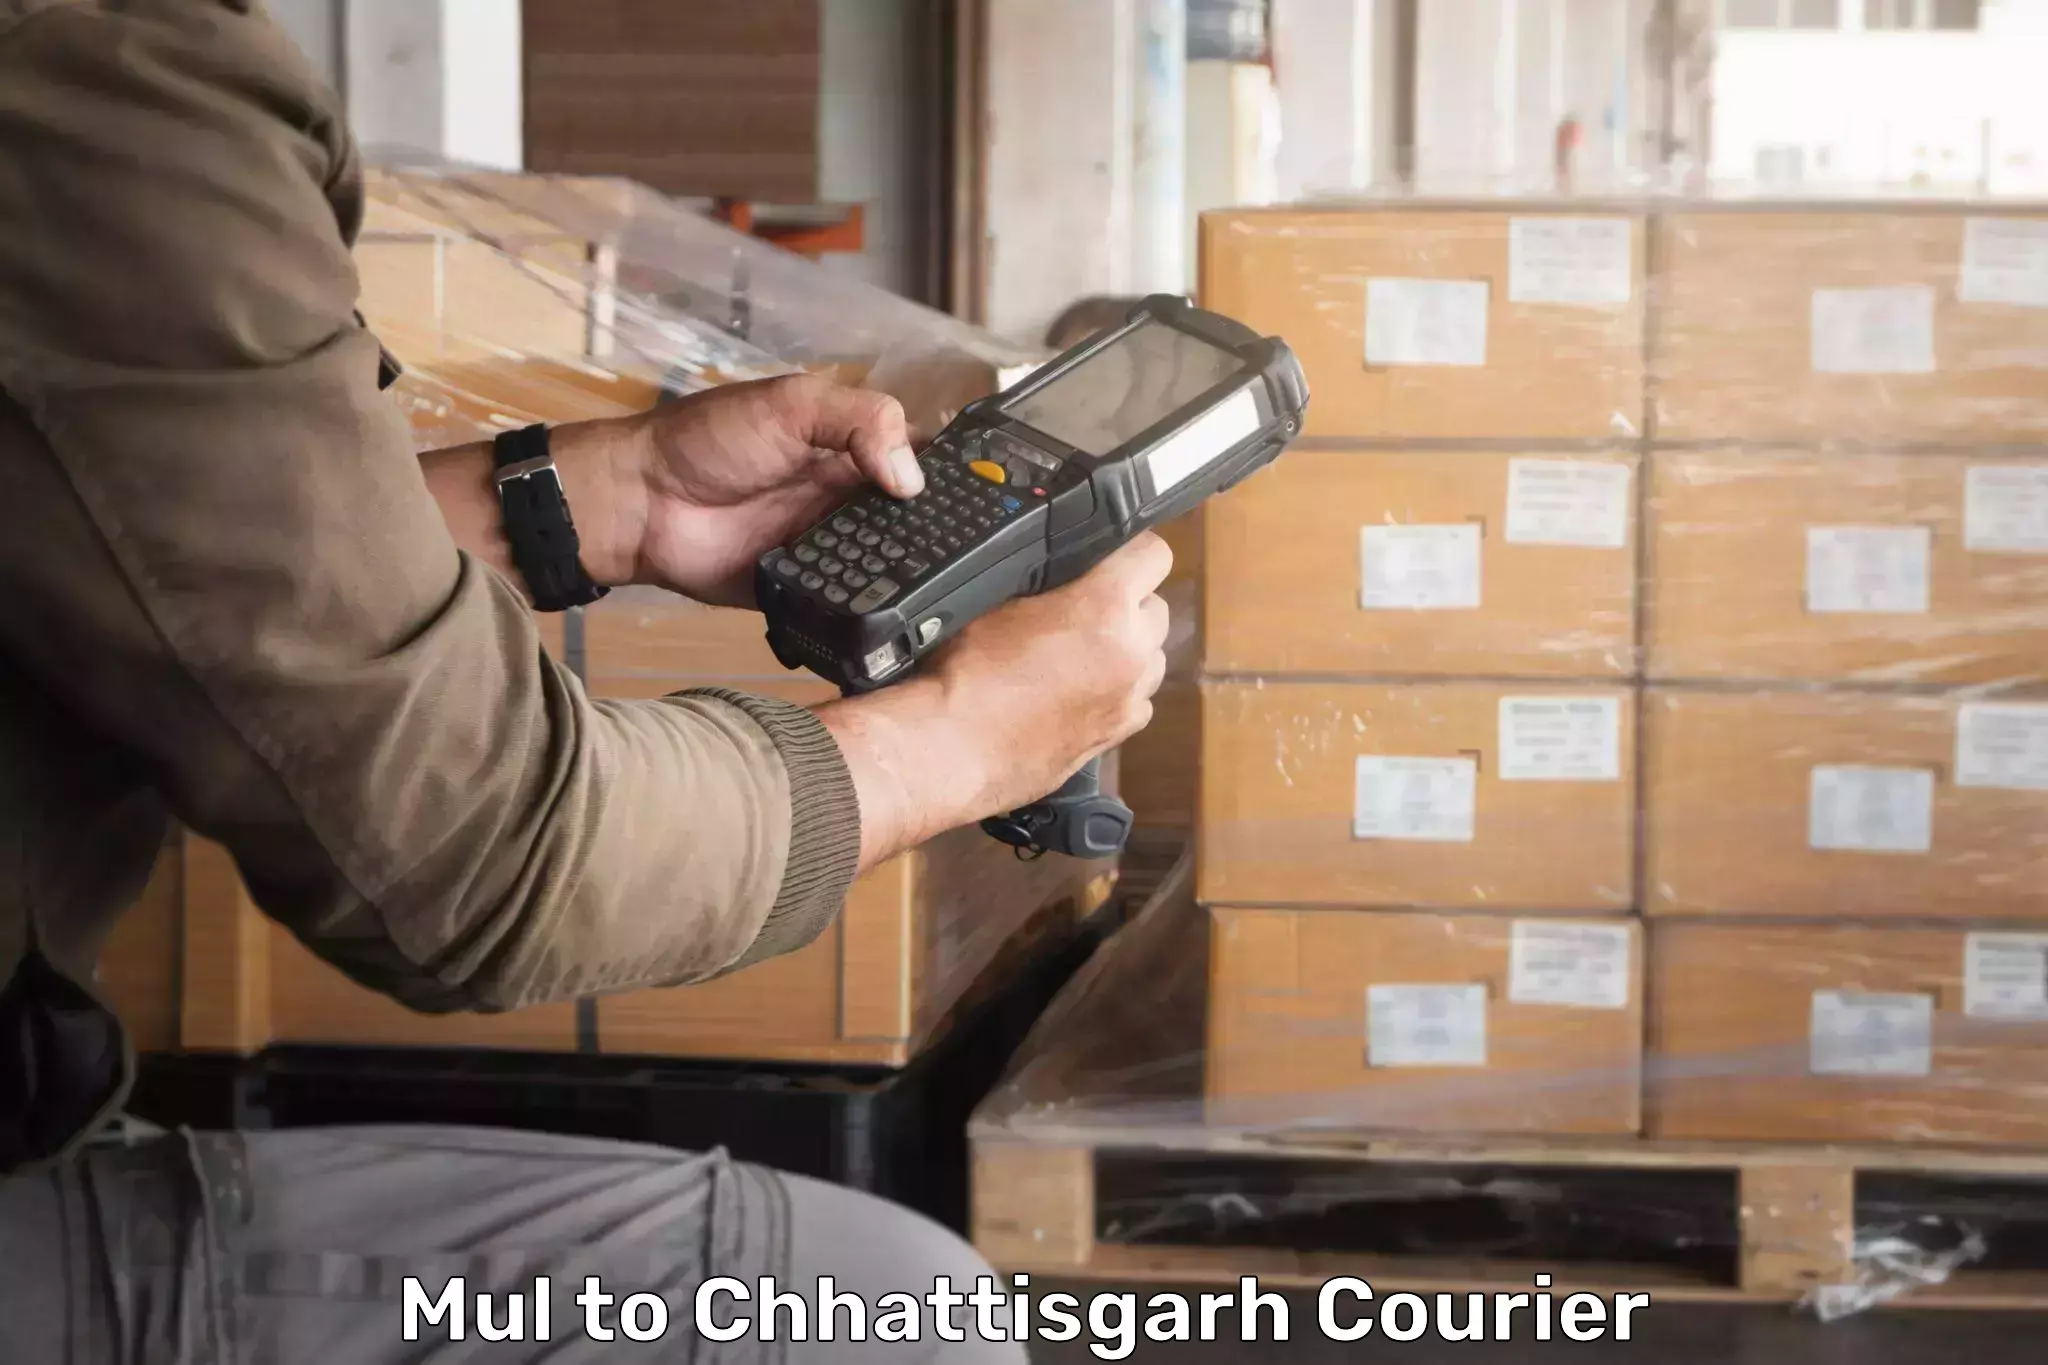 Courier service comparison Mul to Korea Chhattisgarh